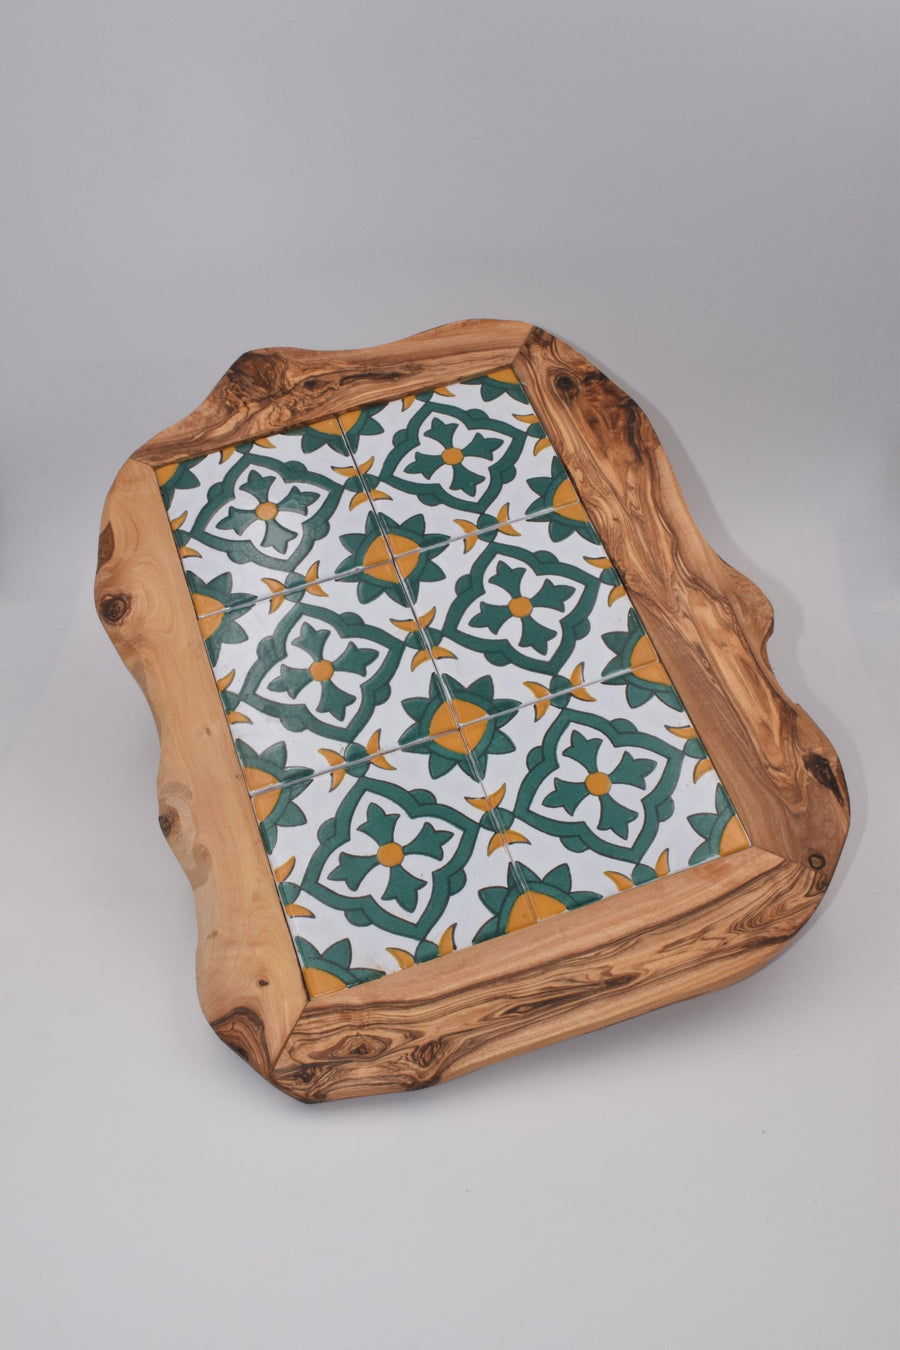 Olive wood ceramic serving plate